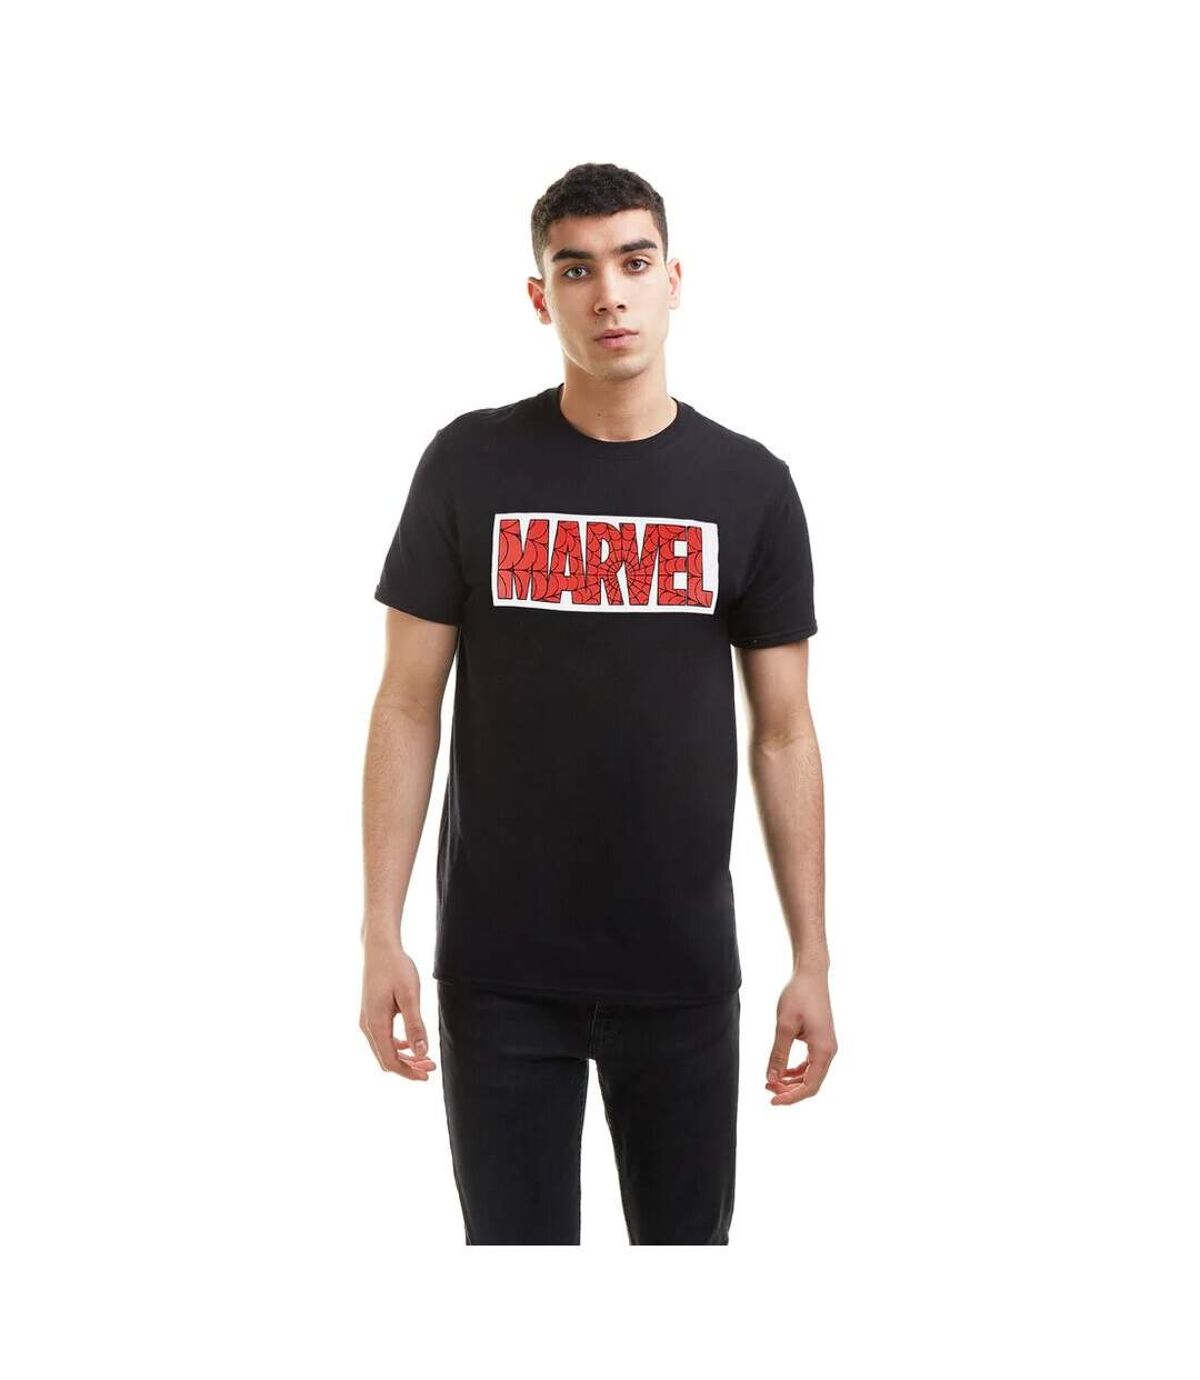 Marvel - T-shirt - Homme (Noir / Blanc / Rouge) - UTTV1096